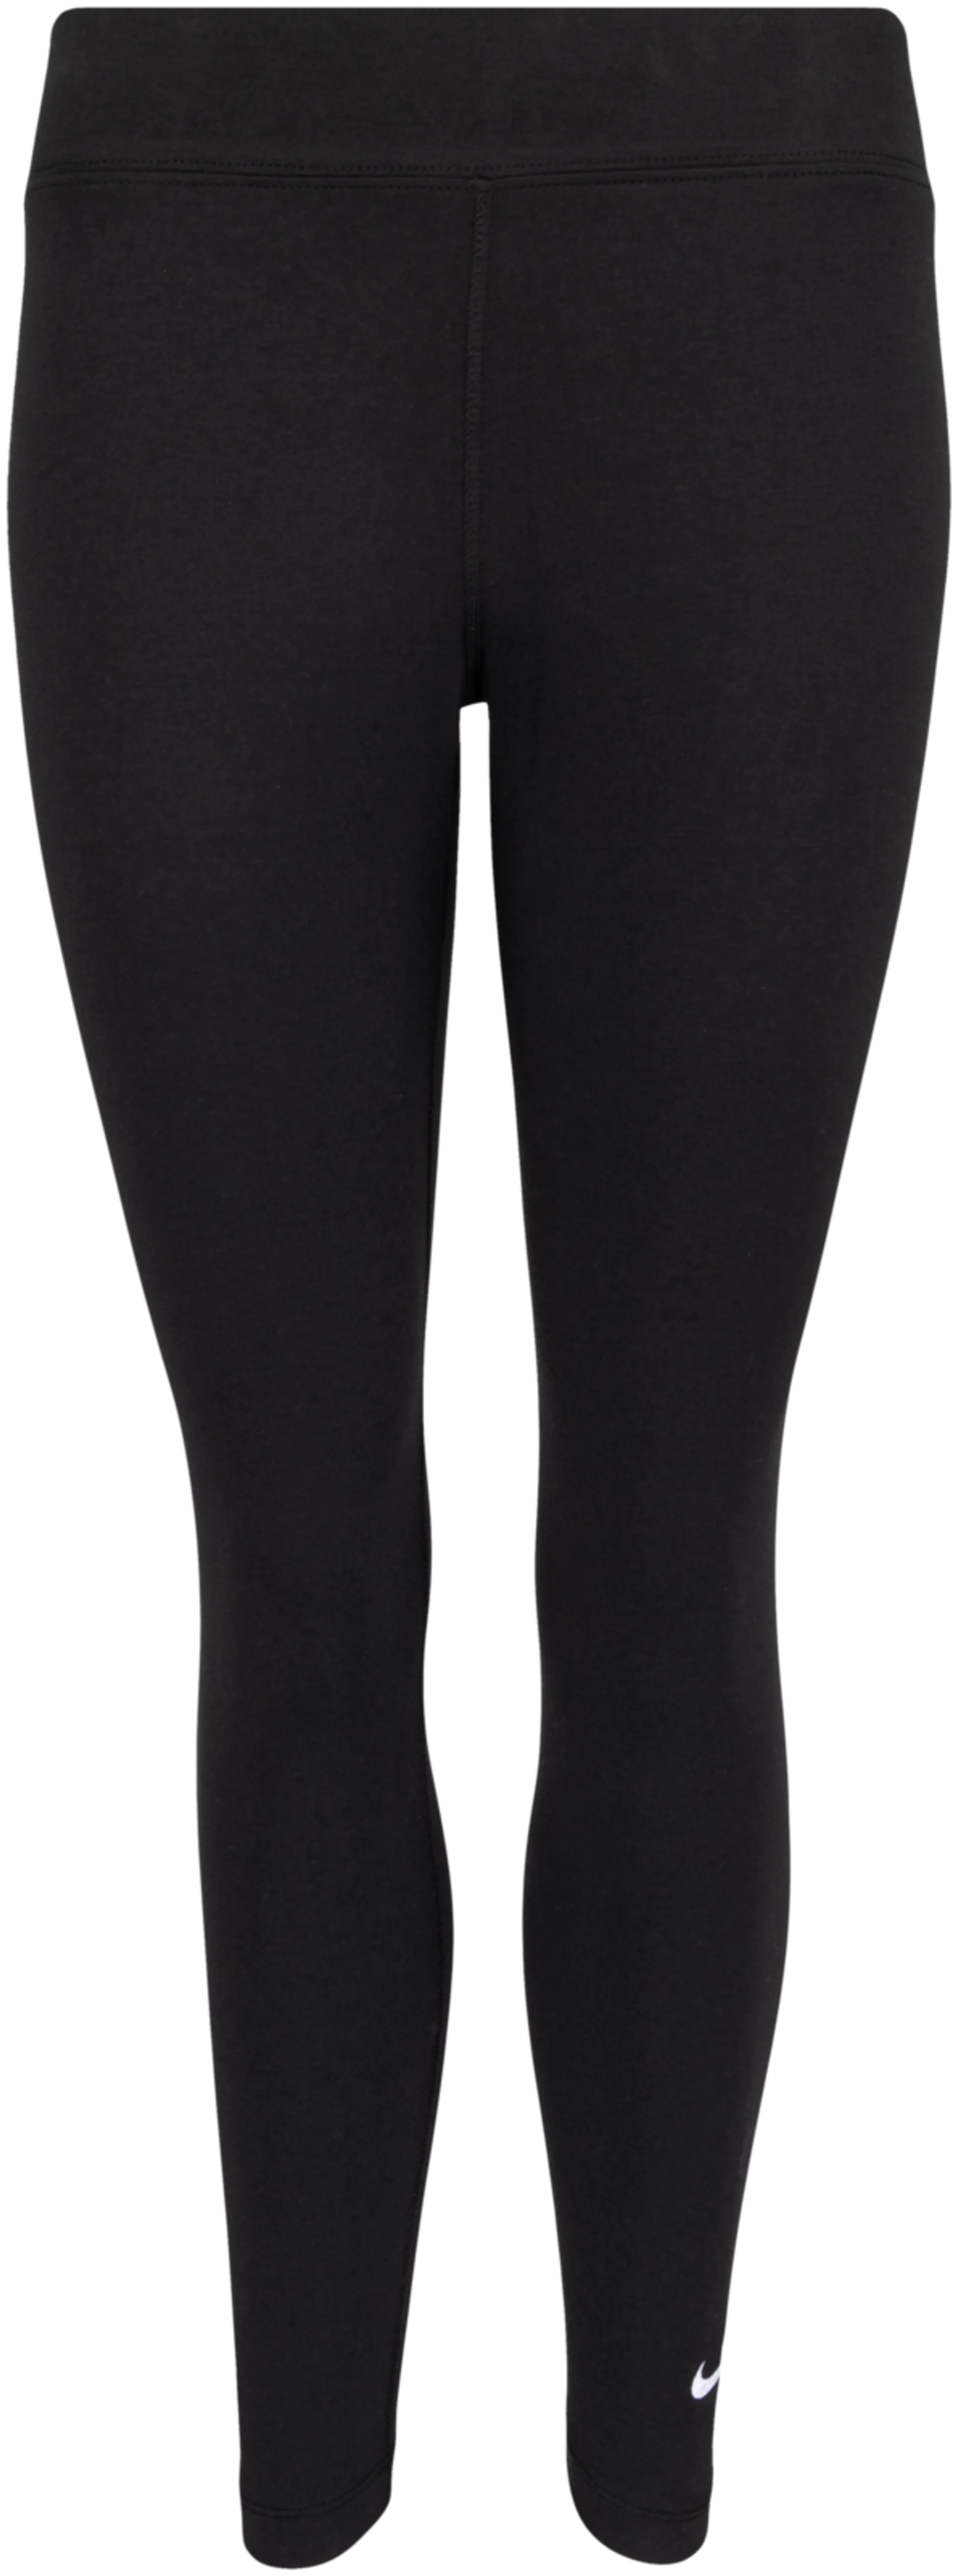 Nike naisten leggingsit CZ8532-010 - MUSTA - 1